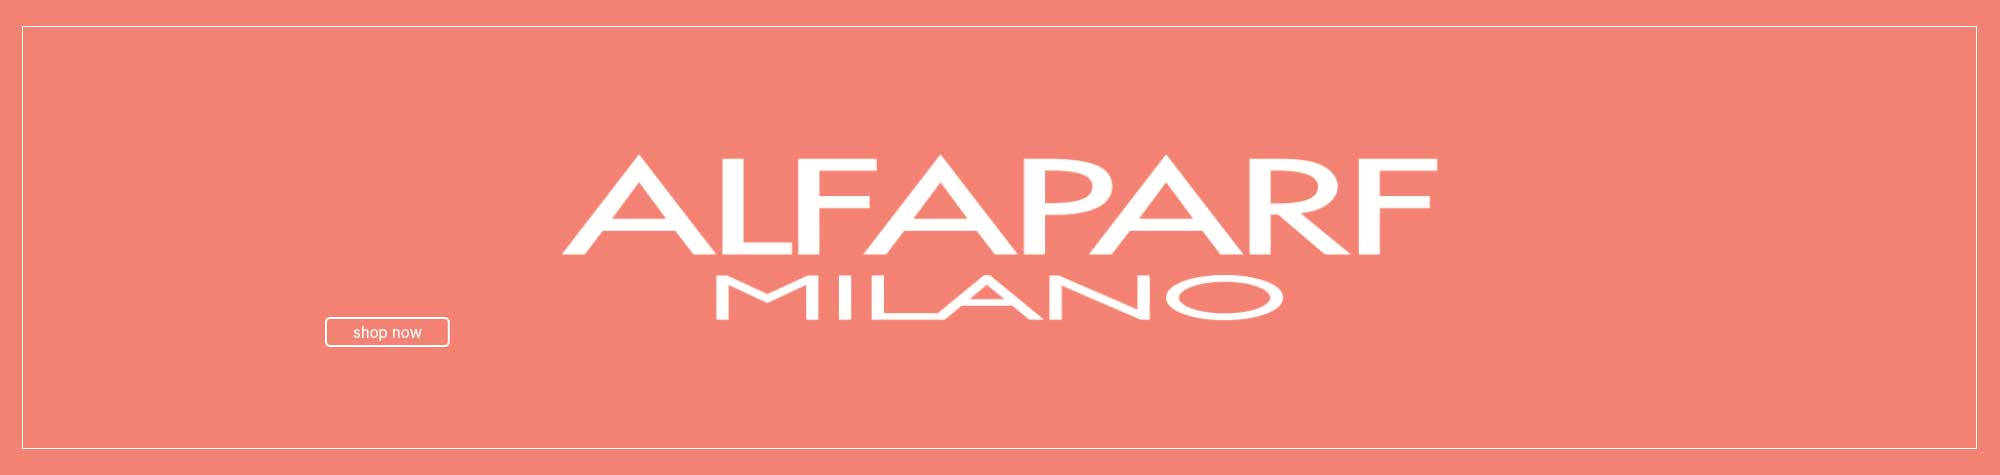 Alfaparf Milano Shop Now